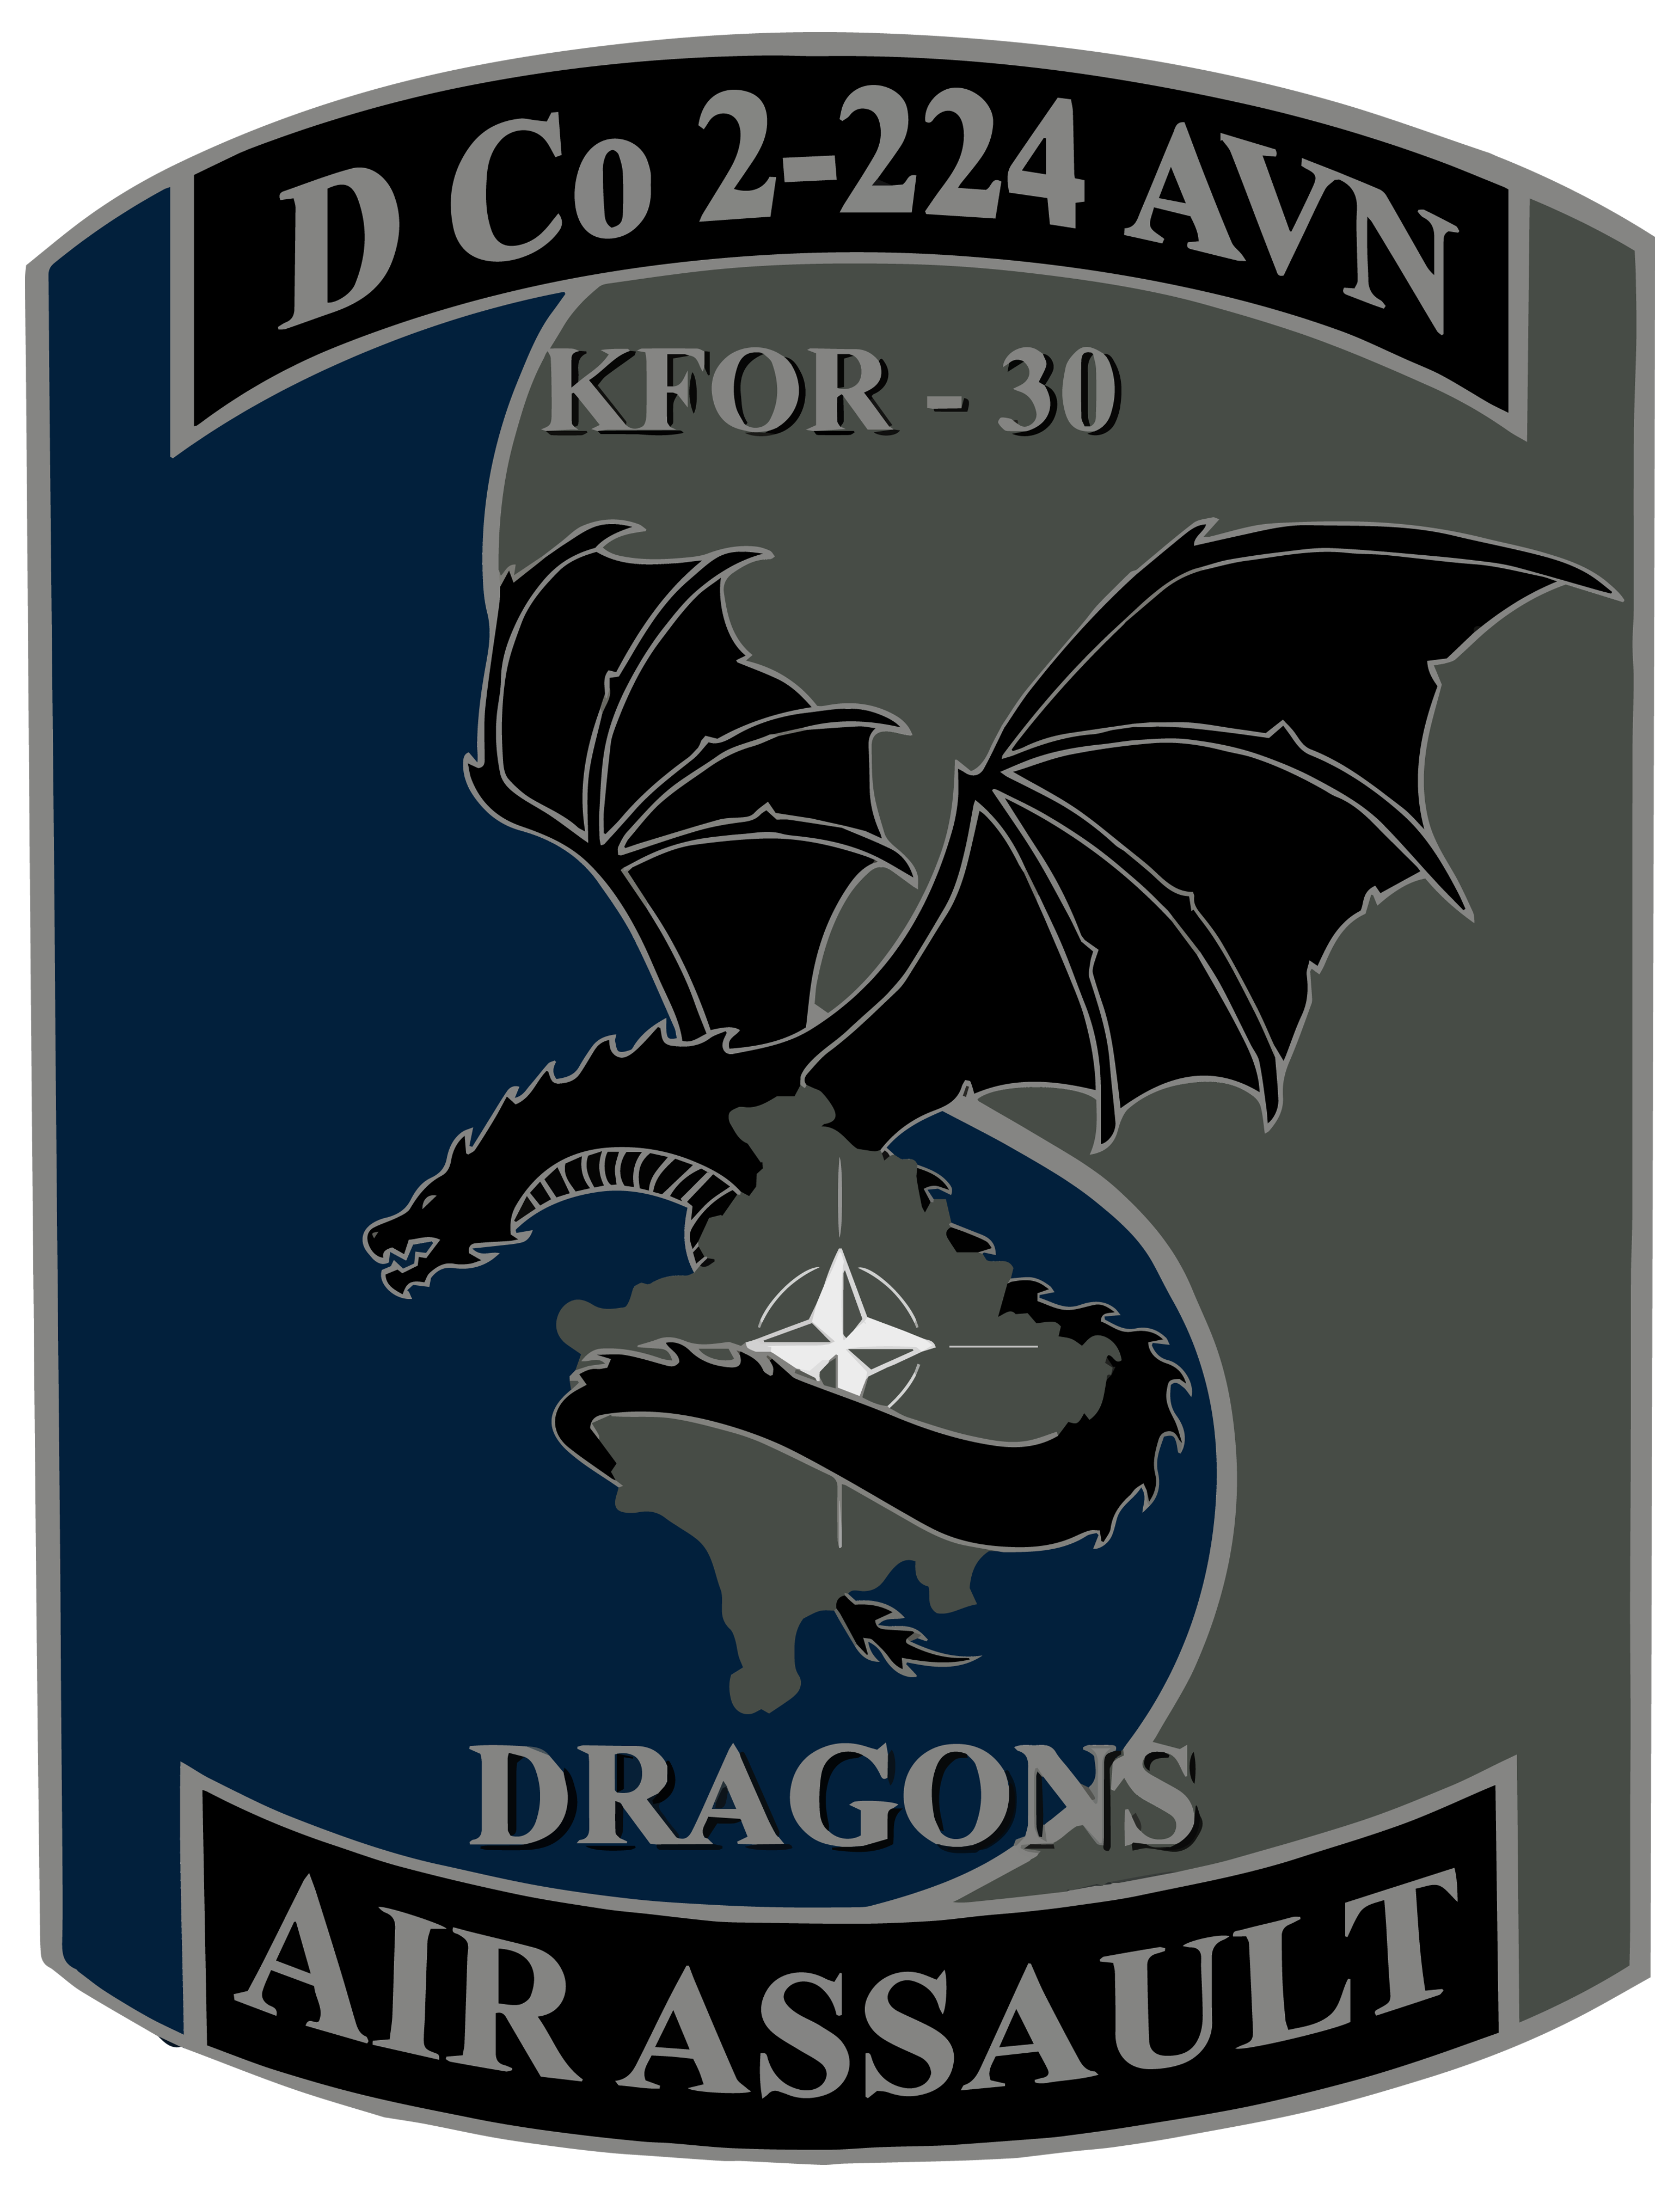 D Co, 2-224 AVN "Dragons"